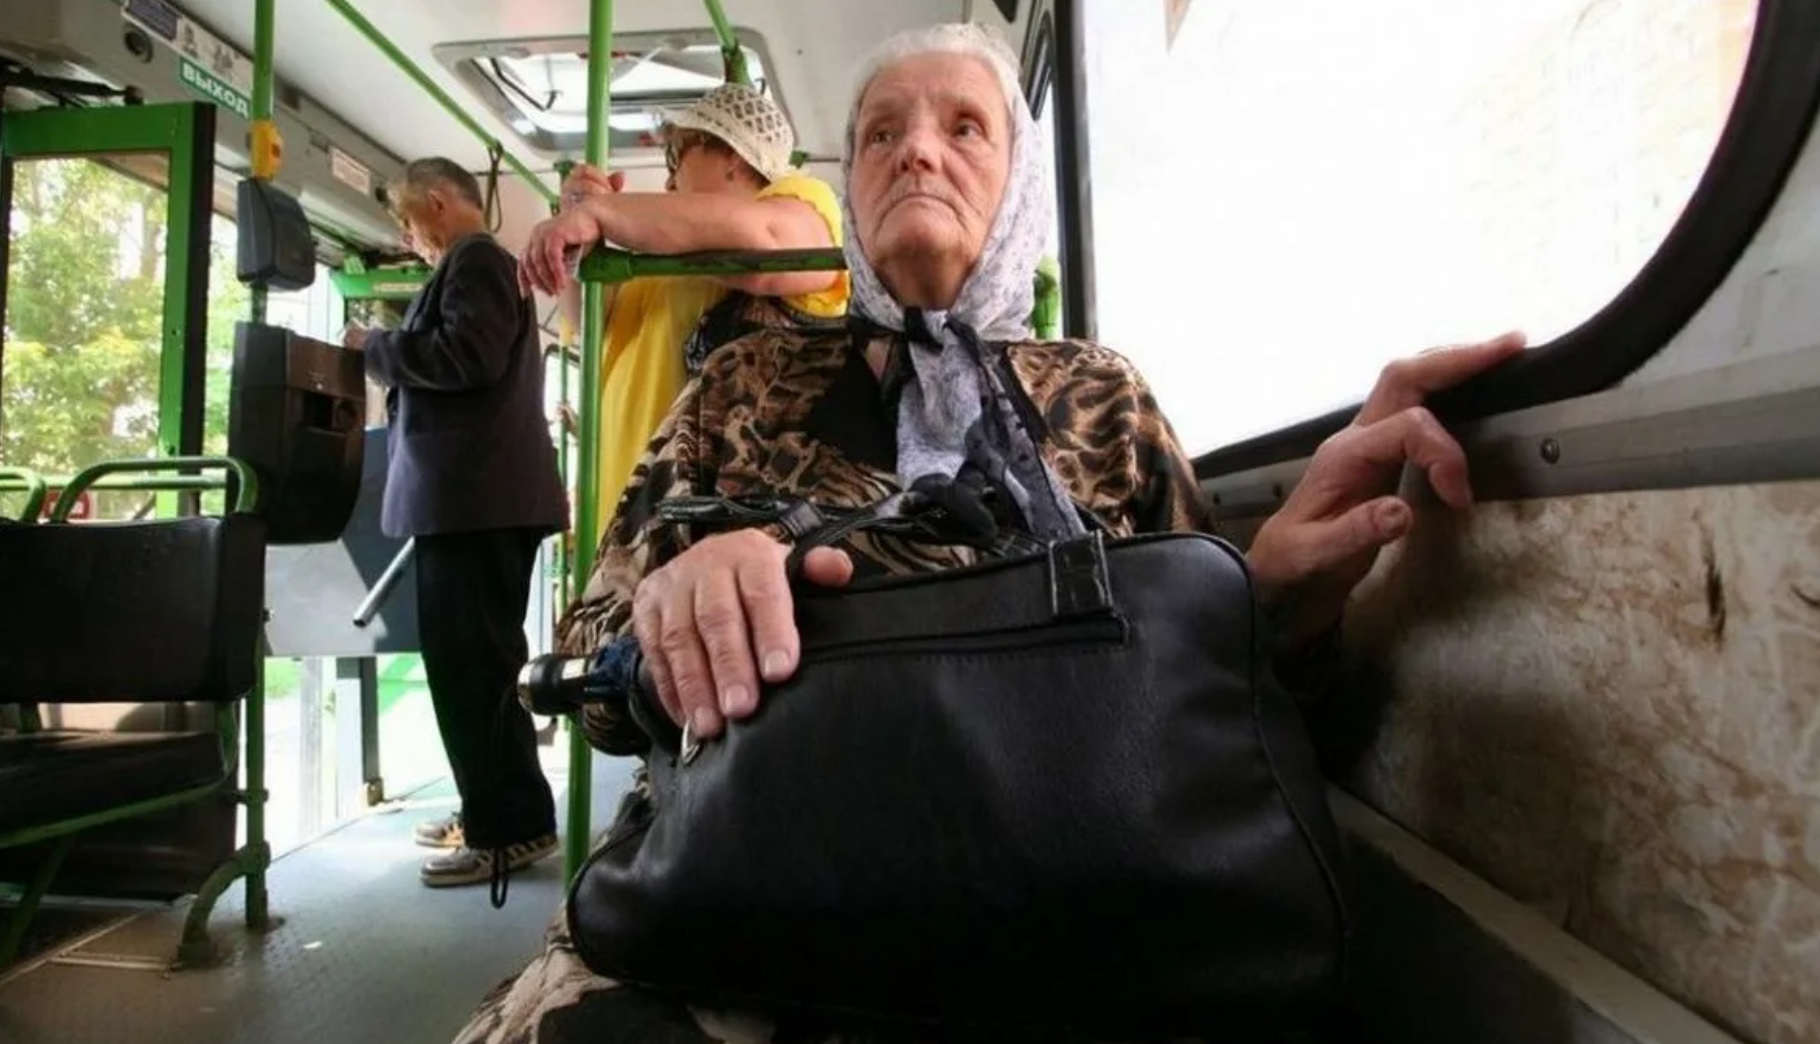 Проезд в автобусах москвы пенсионерам. Пенсионеры в автобусе. Пожилые люди в общественном транспорте. Транспорт для пожилых людей. Пожилые в общественном транспорте.